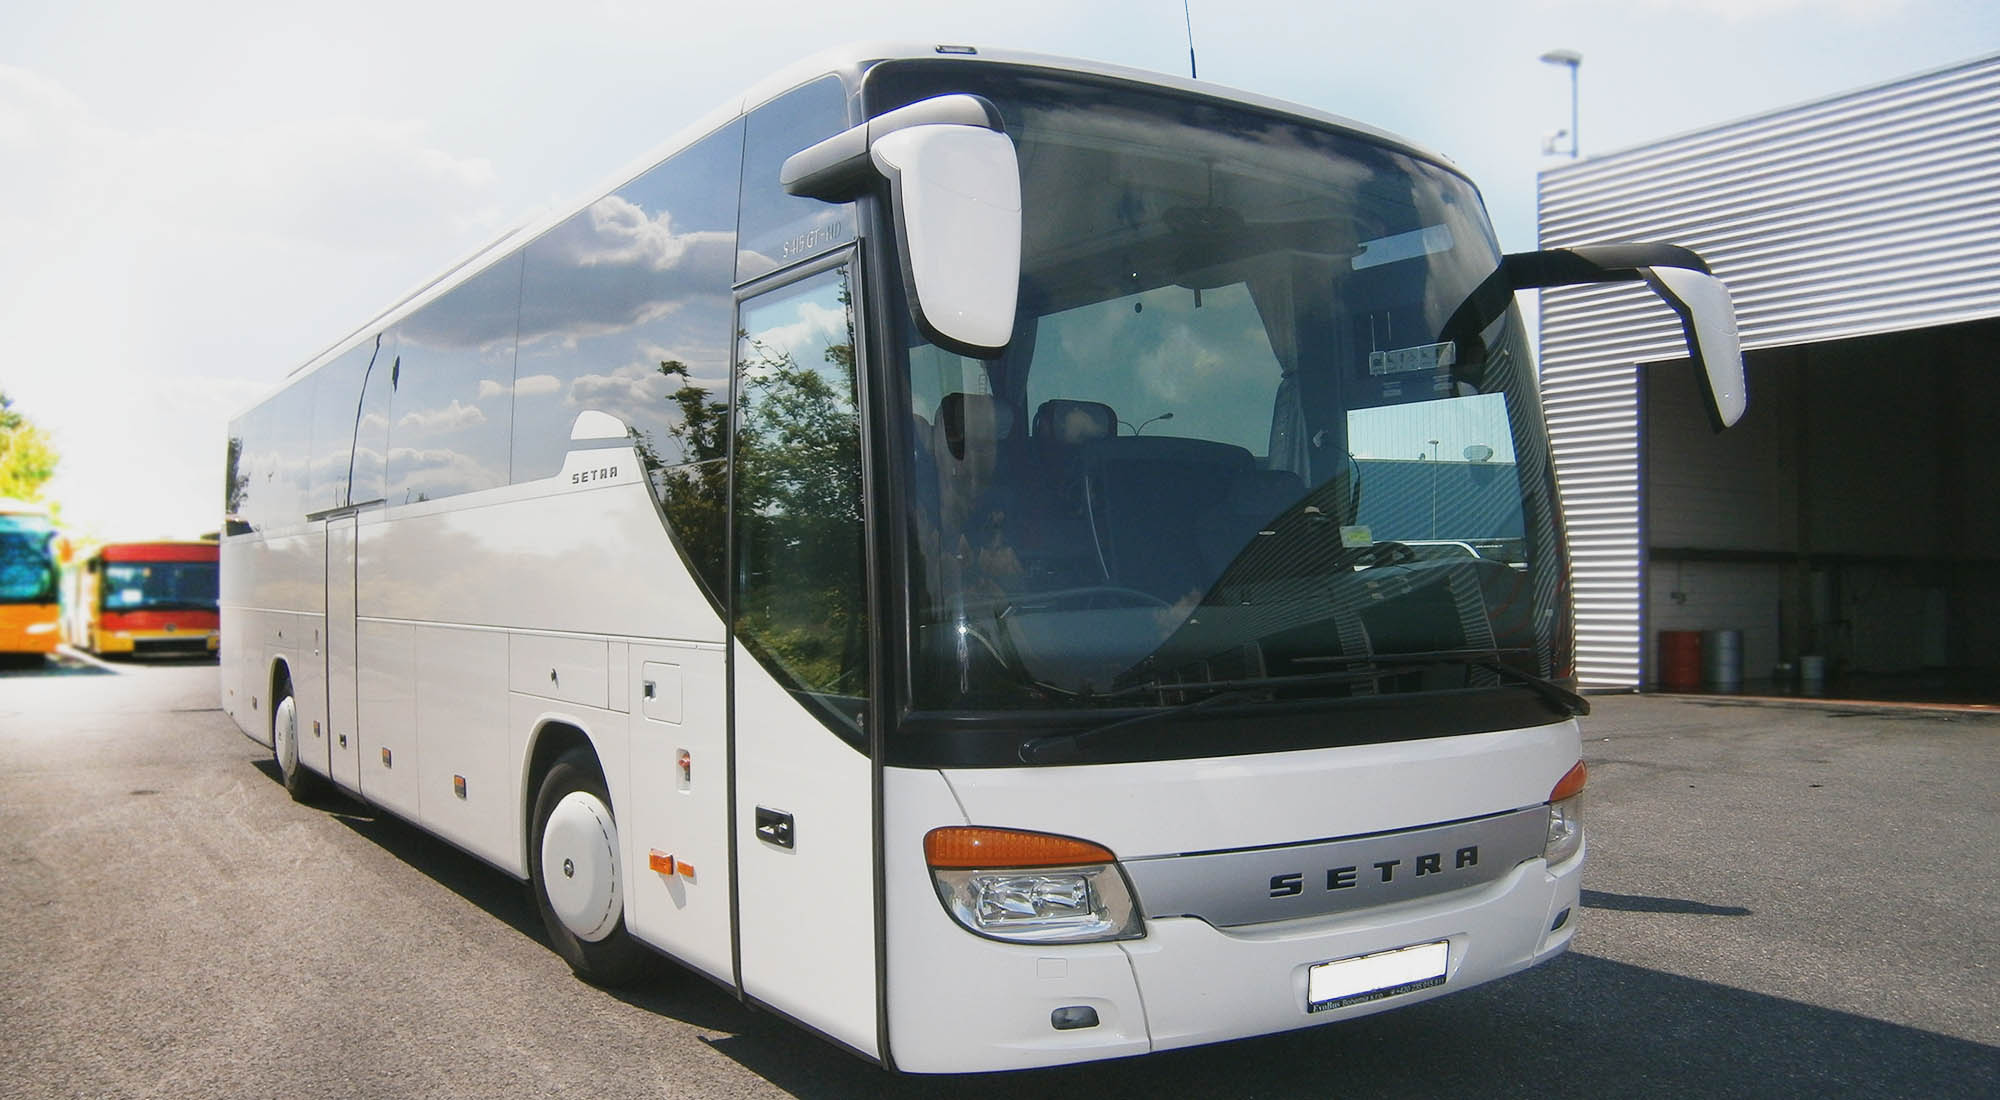 Autobusová doprava v Pardubickém kraji, zájezdová doprava, minibus pro soukromé akce